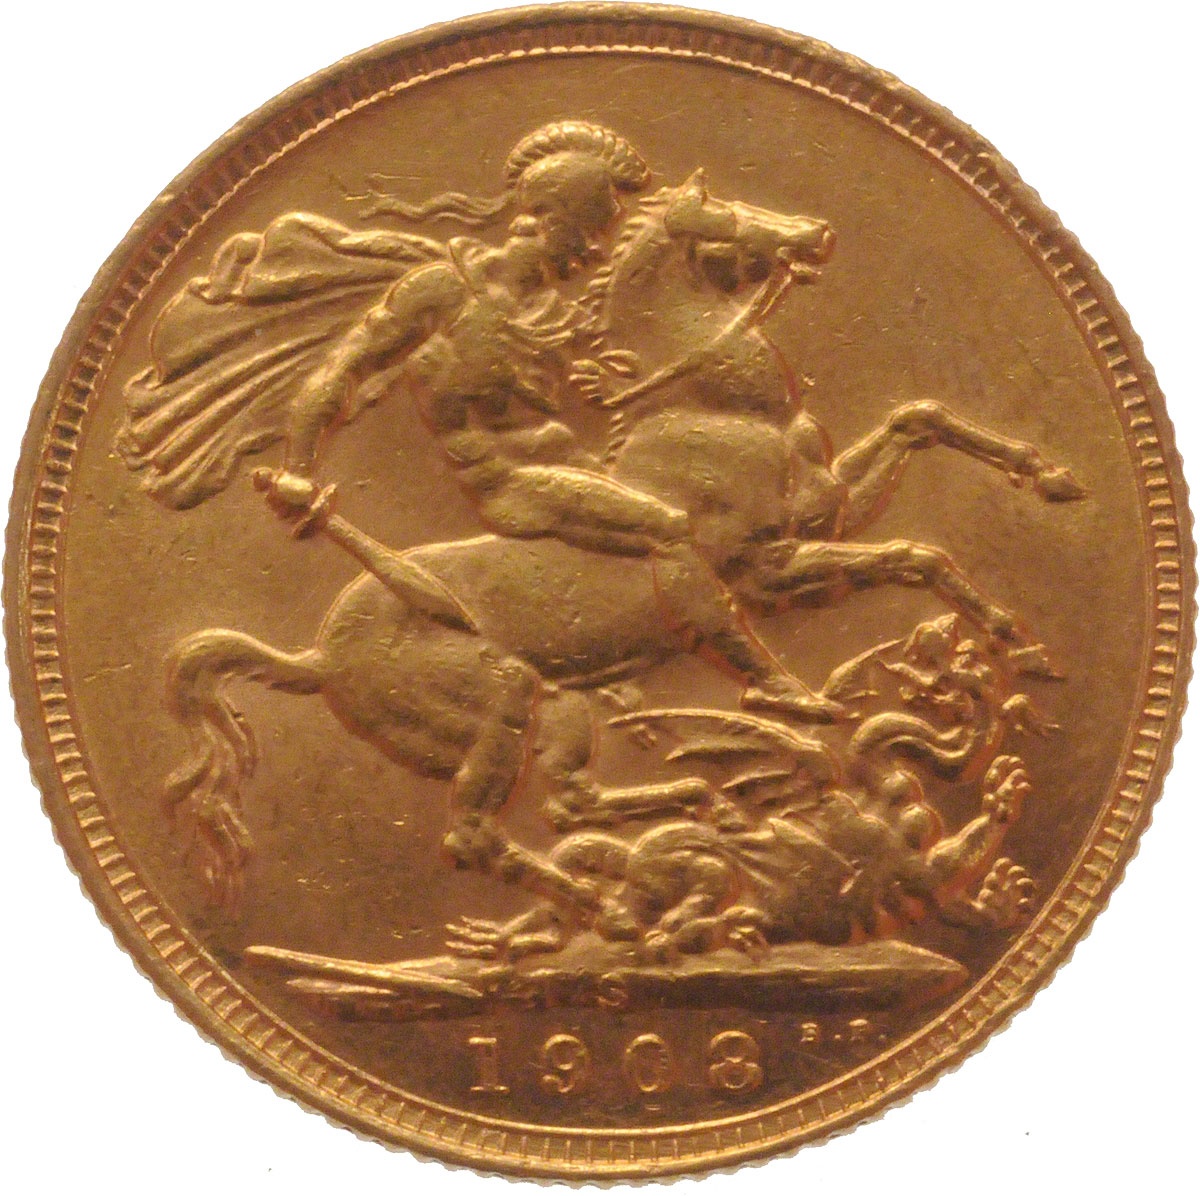 1908 Εδουάρδος Ζ’ (Νομισματοκοπείο Σίδνεϊ)